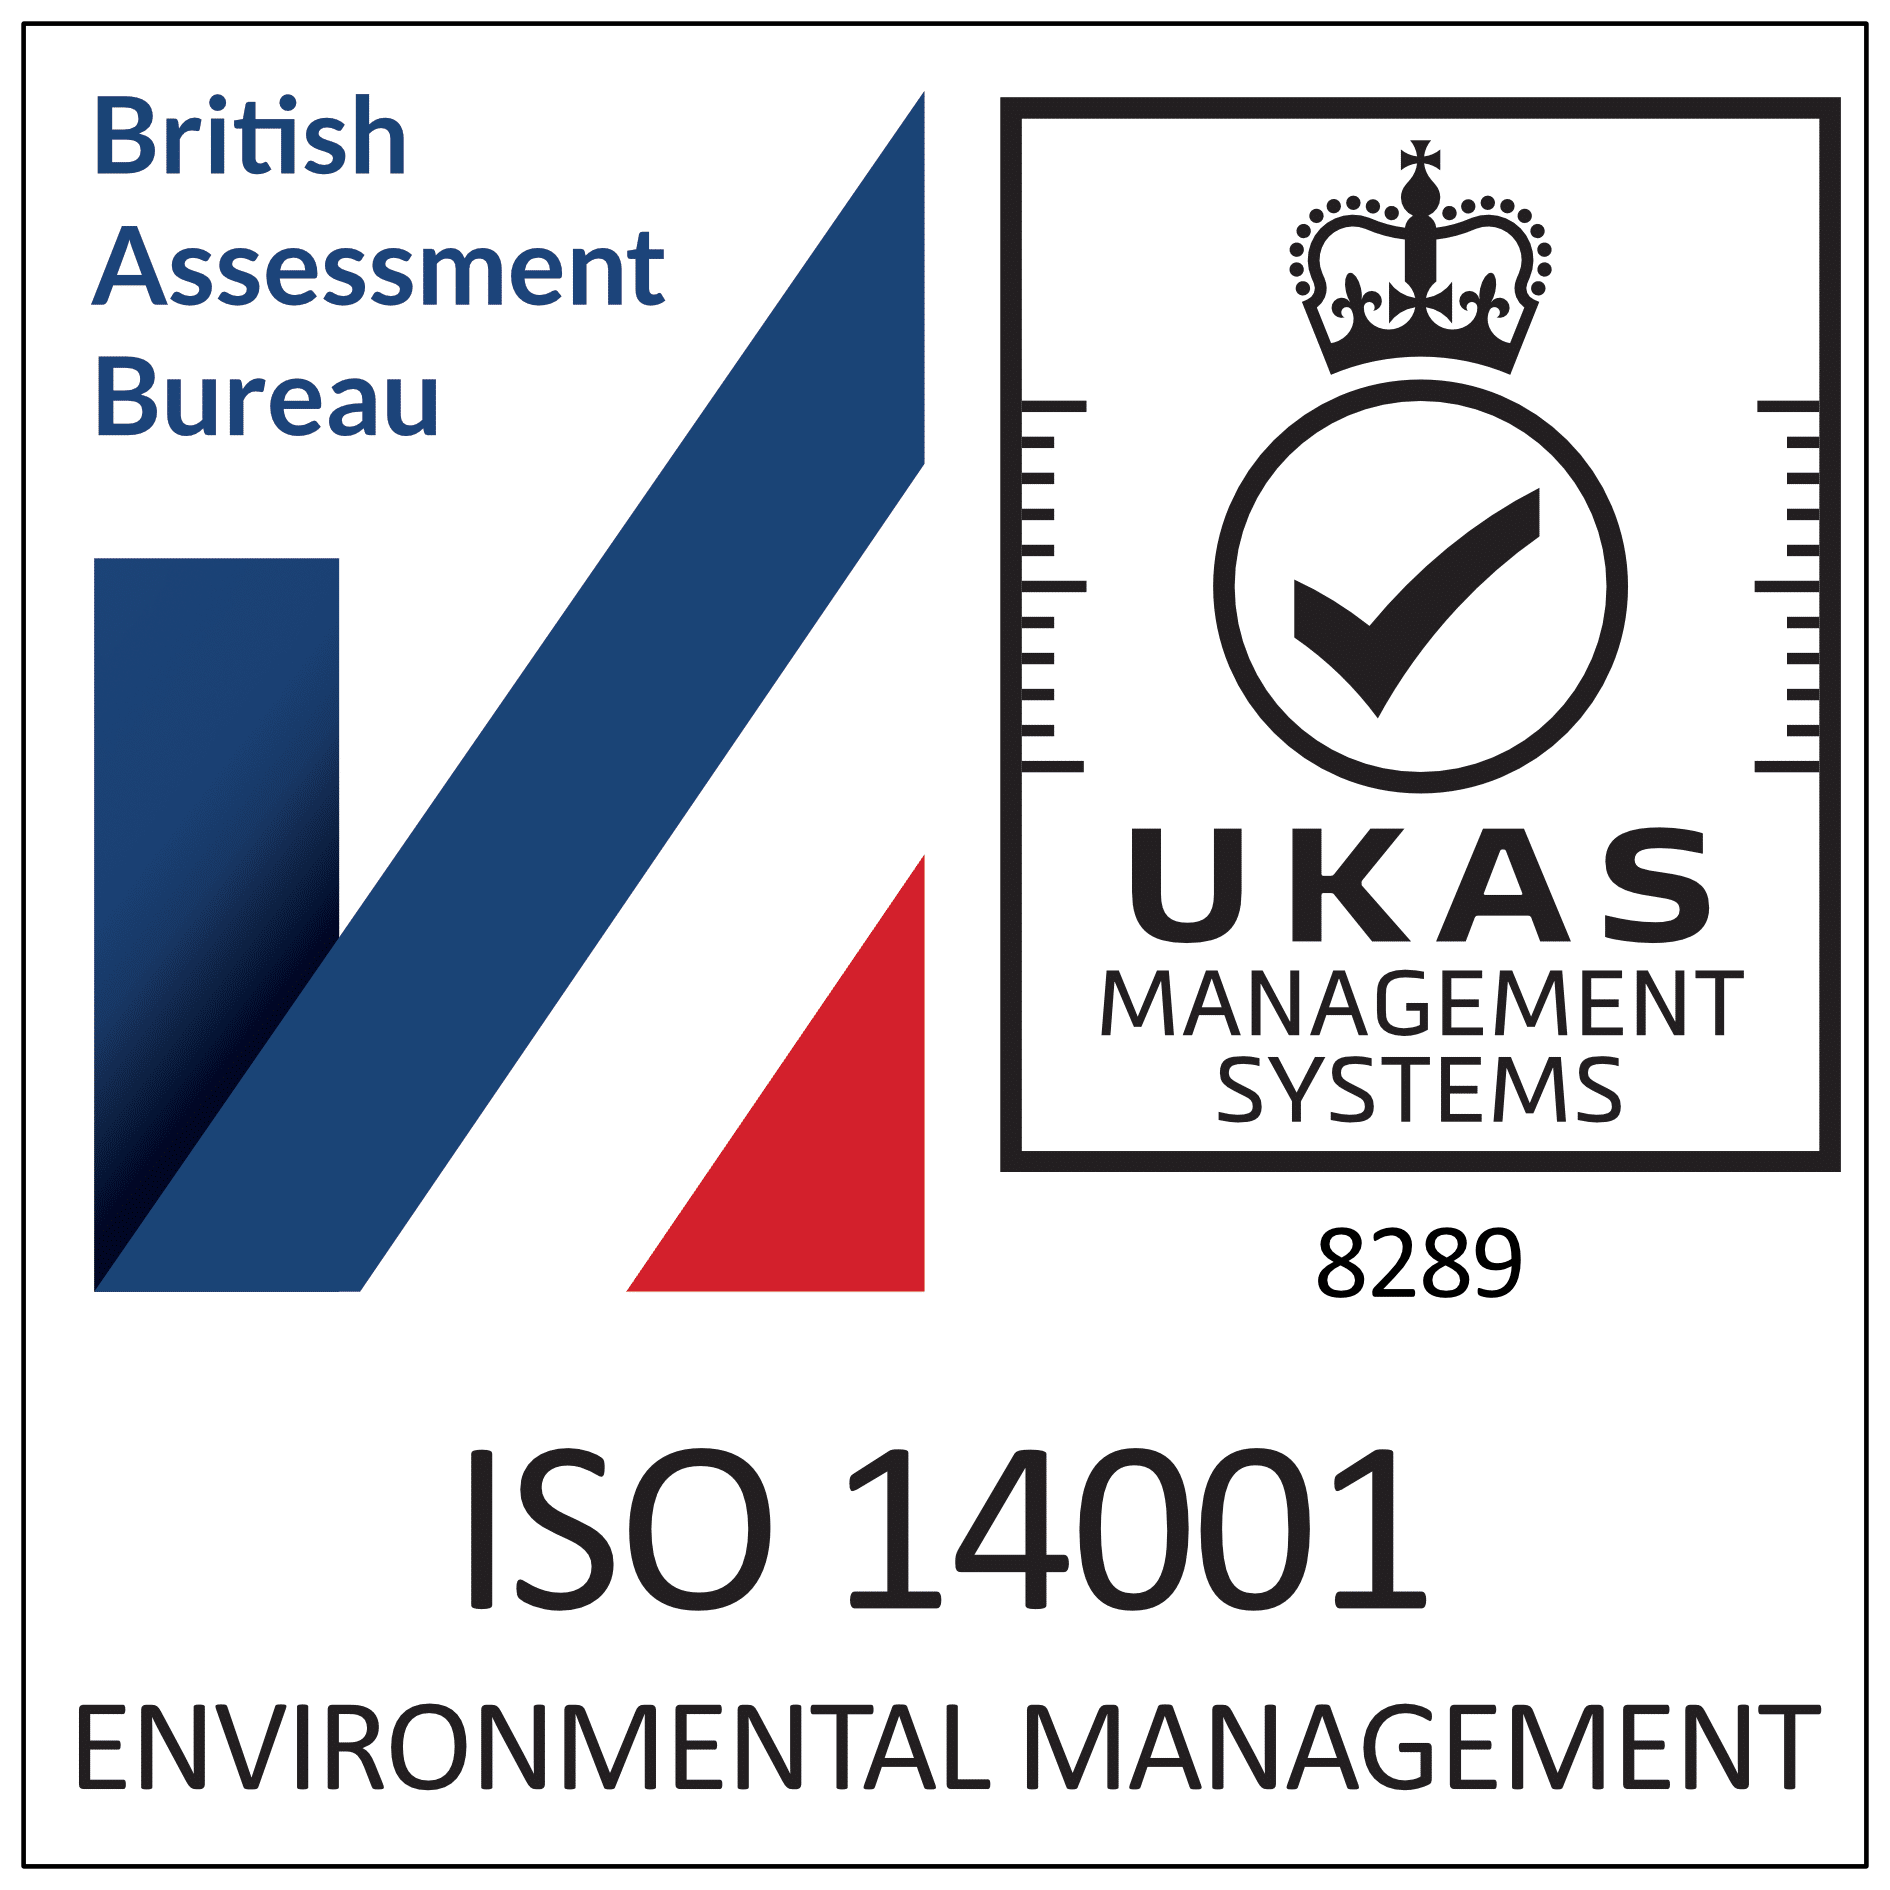 British Assessment Bureau ISO 14001 logo